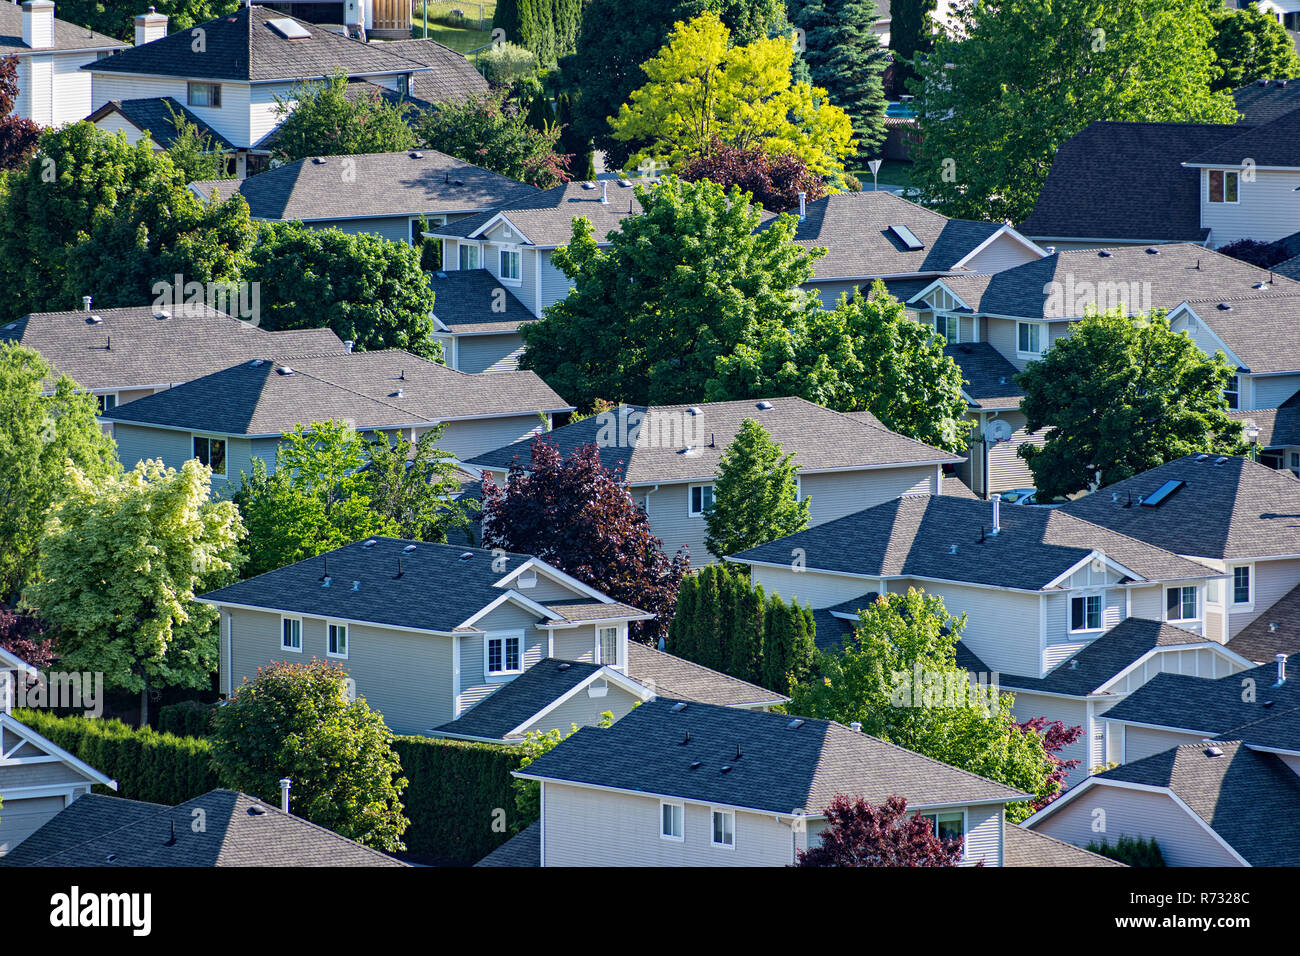 Vista in elevazione di un area residenziale nella Okanagan Valley West Kelowna British Columbia Canada Foto Stock